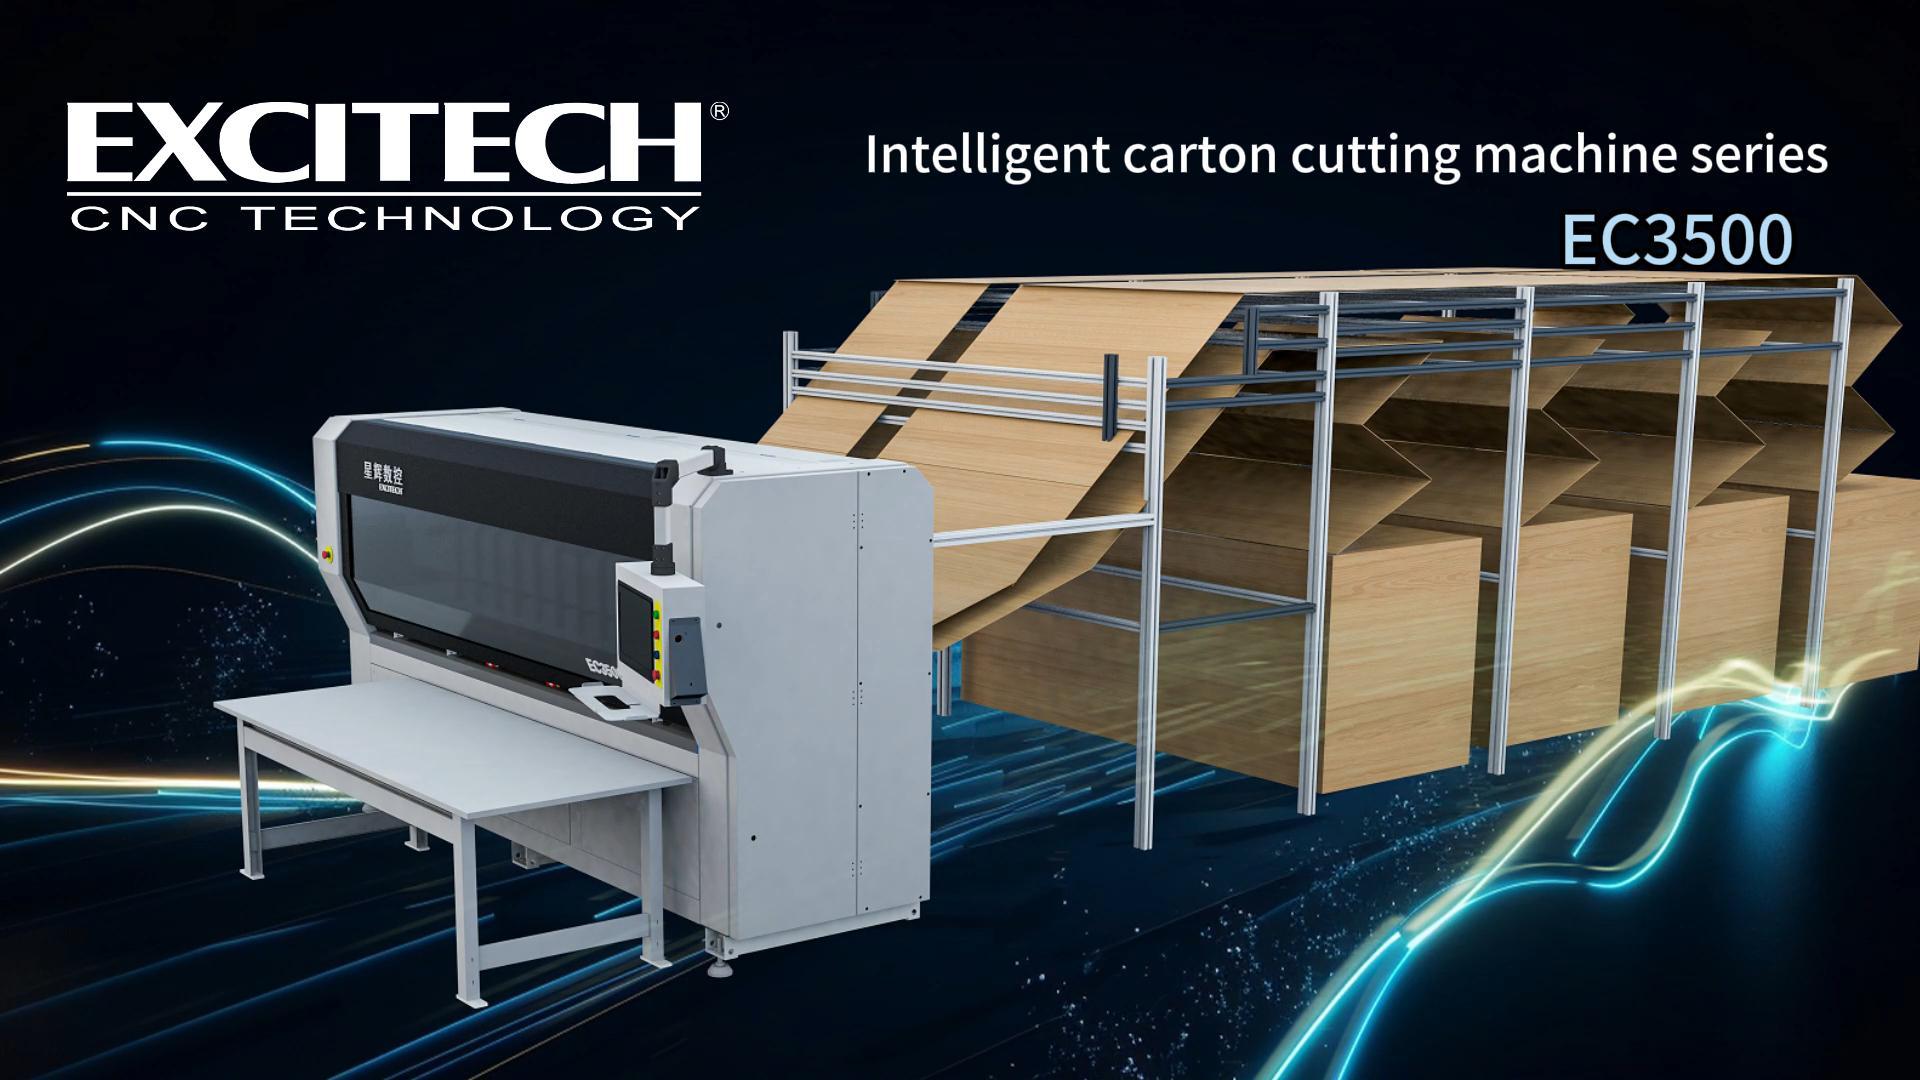 Máy cắt hộp sóng Excitech - giải pháp cắt chất lượng cao trong ngành bao bì.